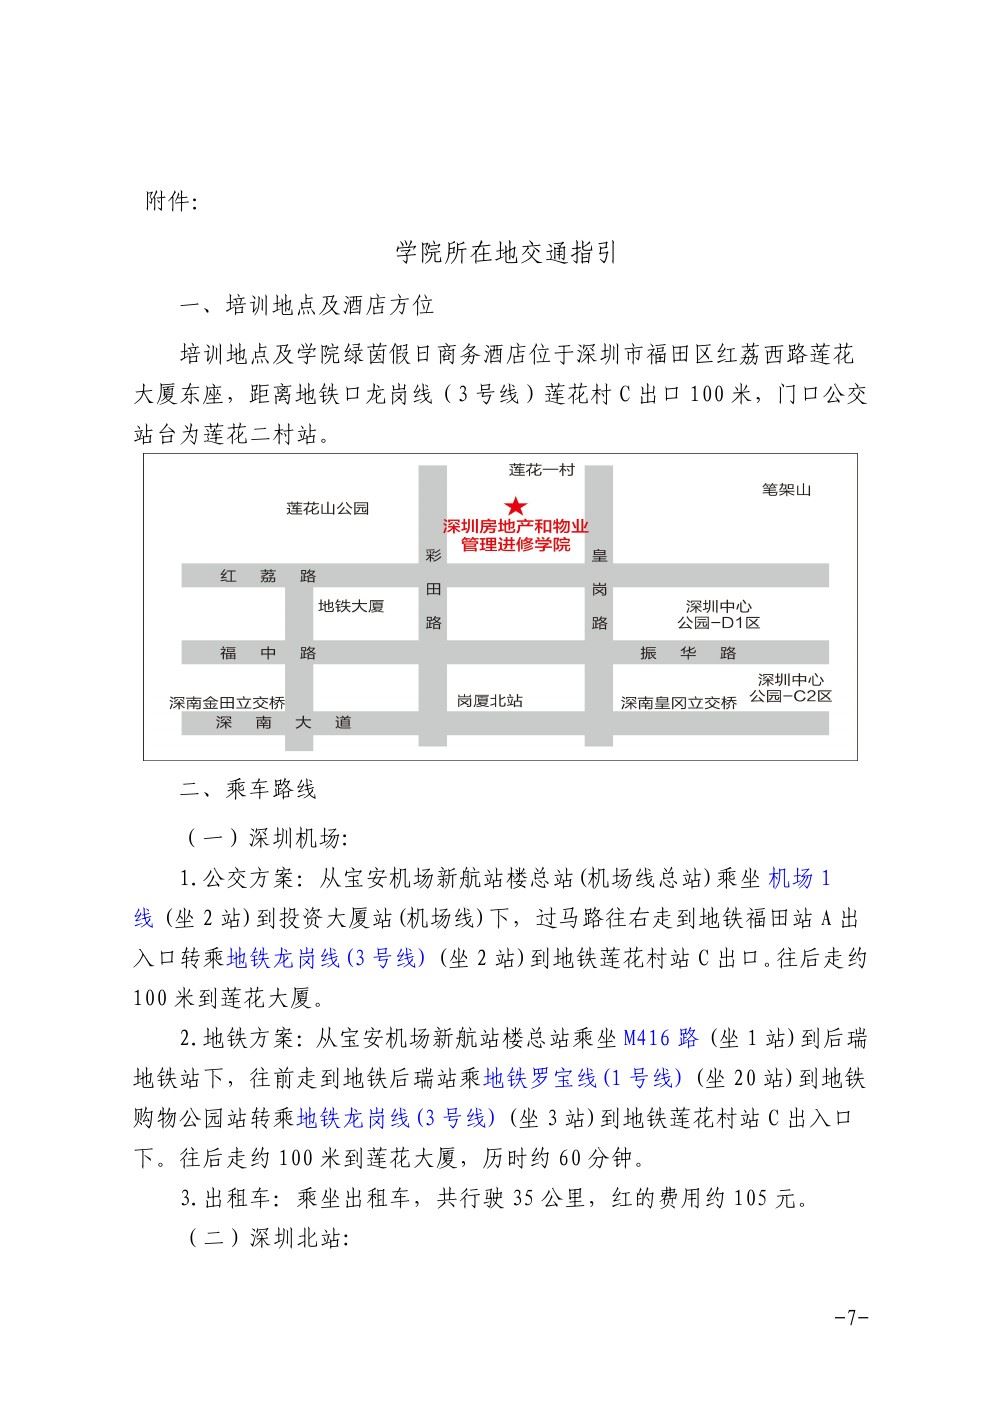 关于在深圳举办石材护理技术项目经理培训班的通知7-乐虎直播